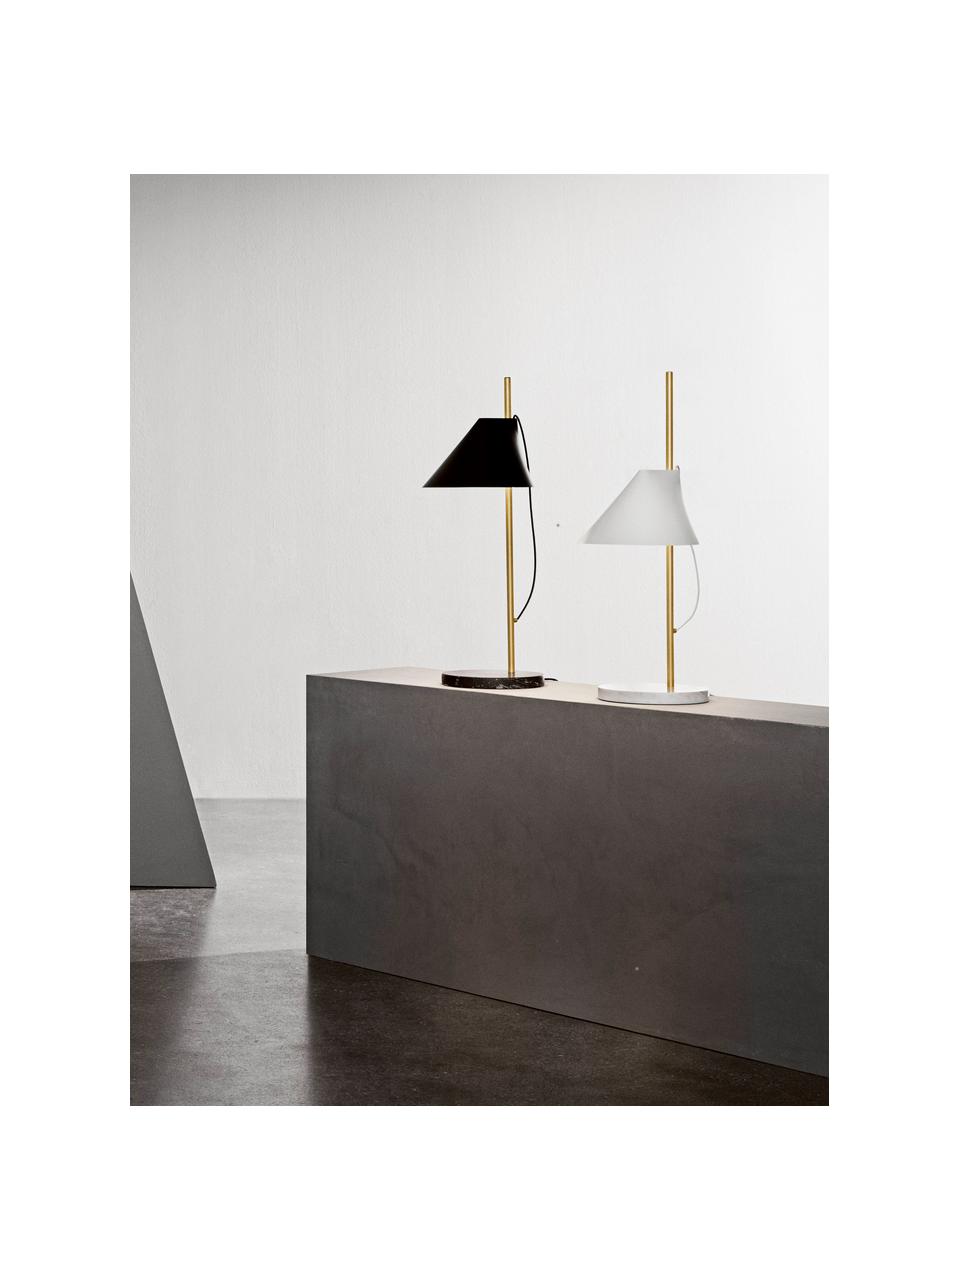 Lampa stołowa LED z funkcją przyciemniania Yuh, Stelaż: mosiądz szczotkowany, Biały, marmurowy, mosiężny, Ø 20 x 61 cm